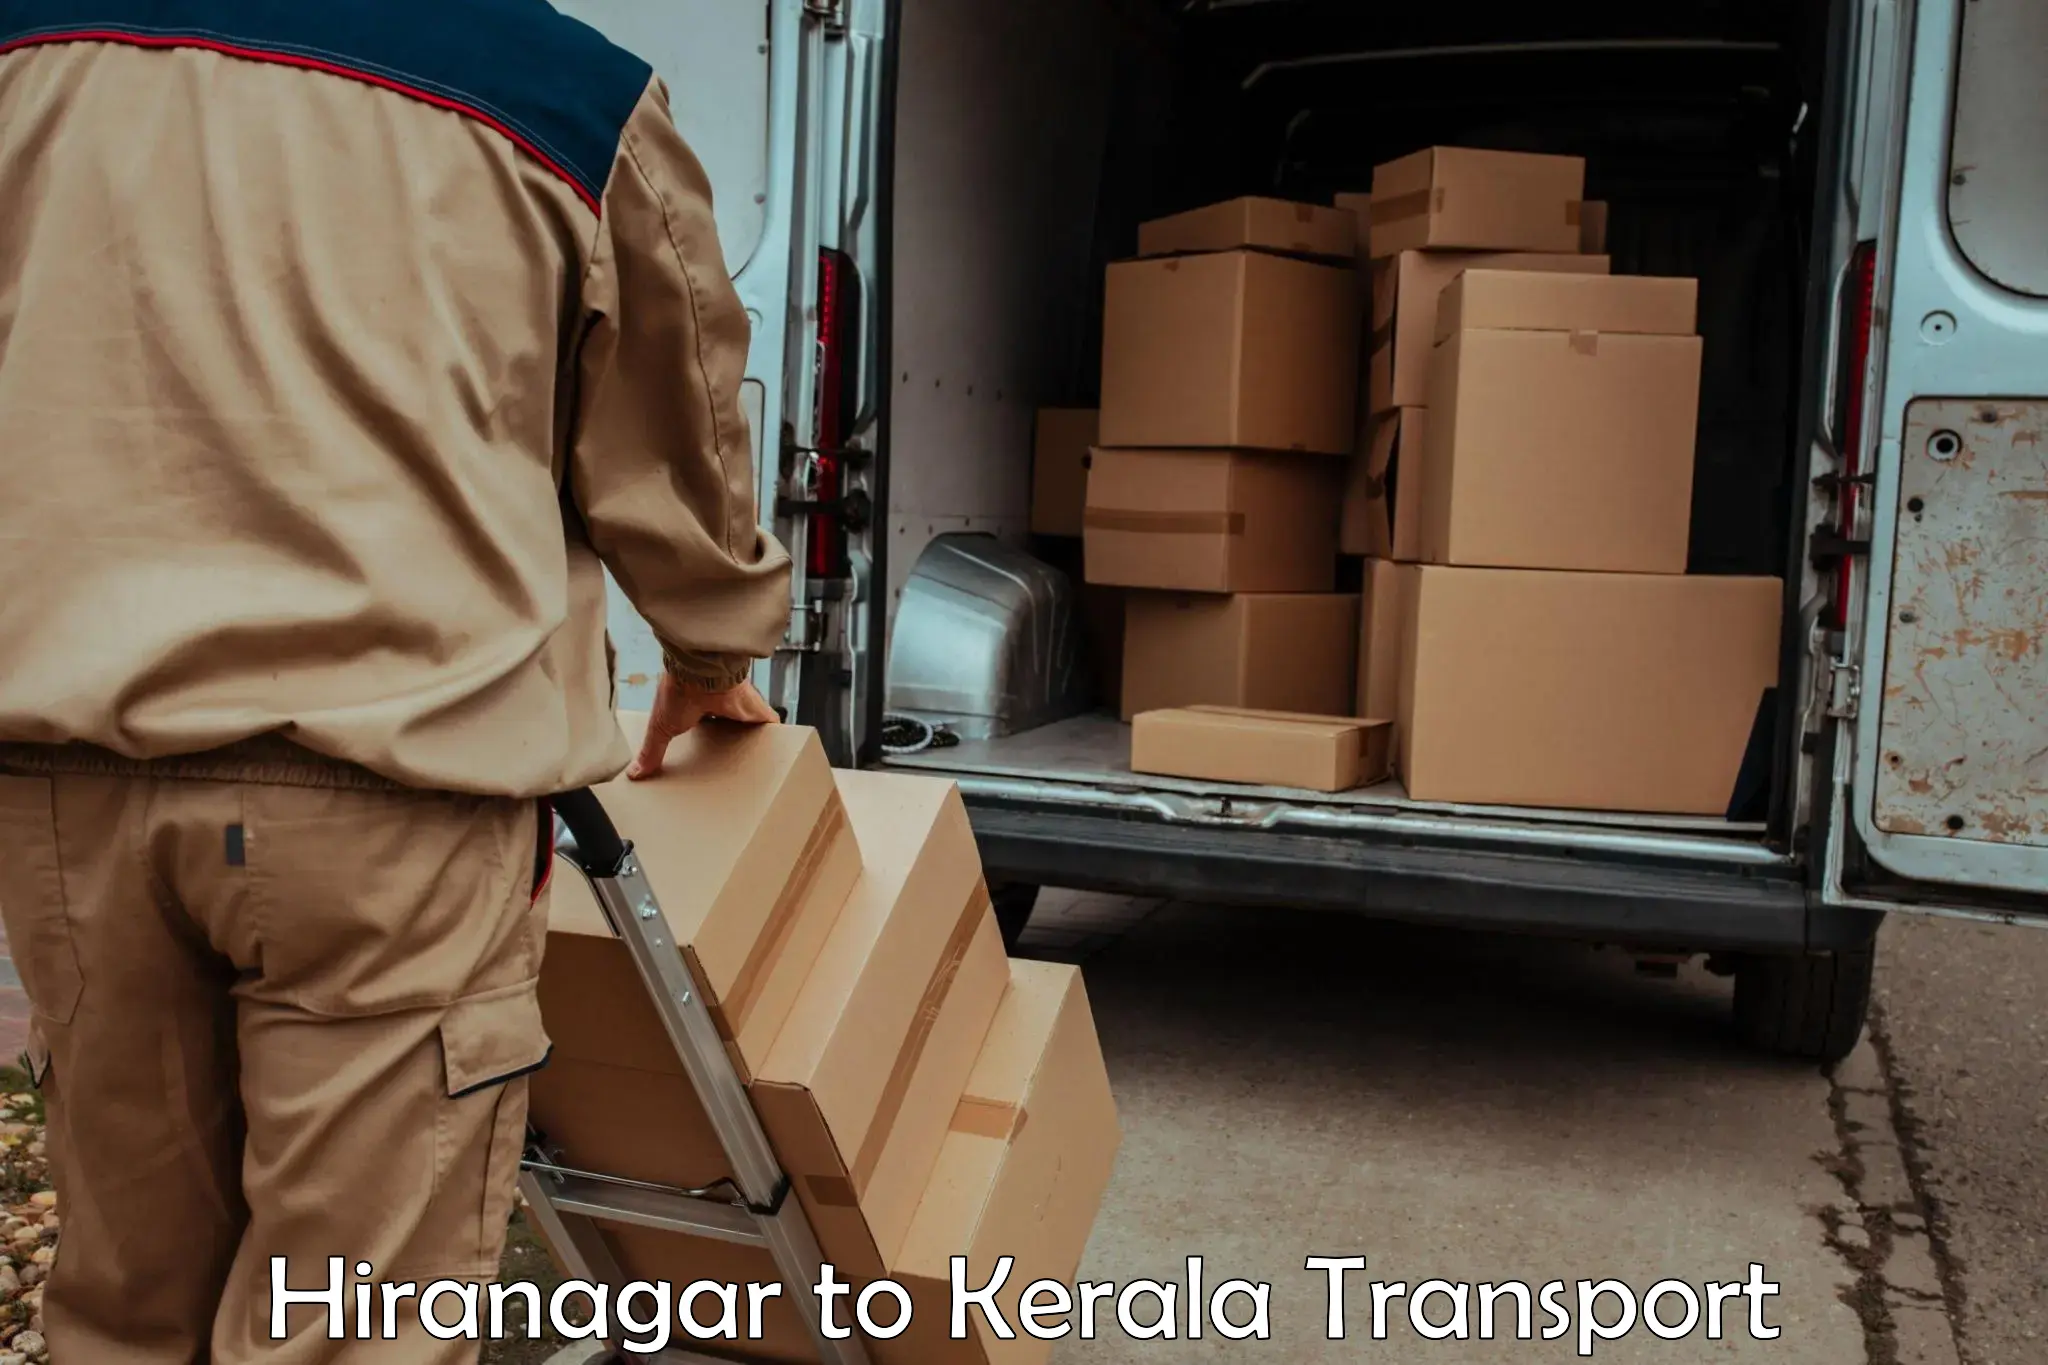 Vehicle transport services Hiranagar to Trivandrum